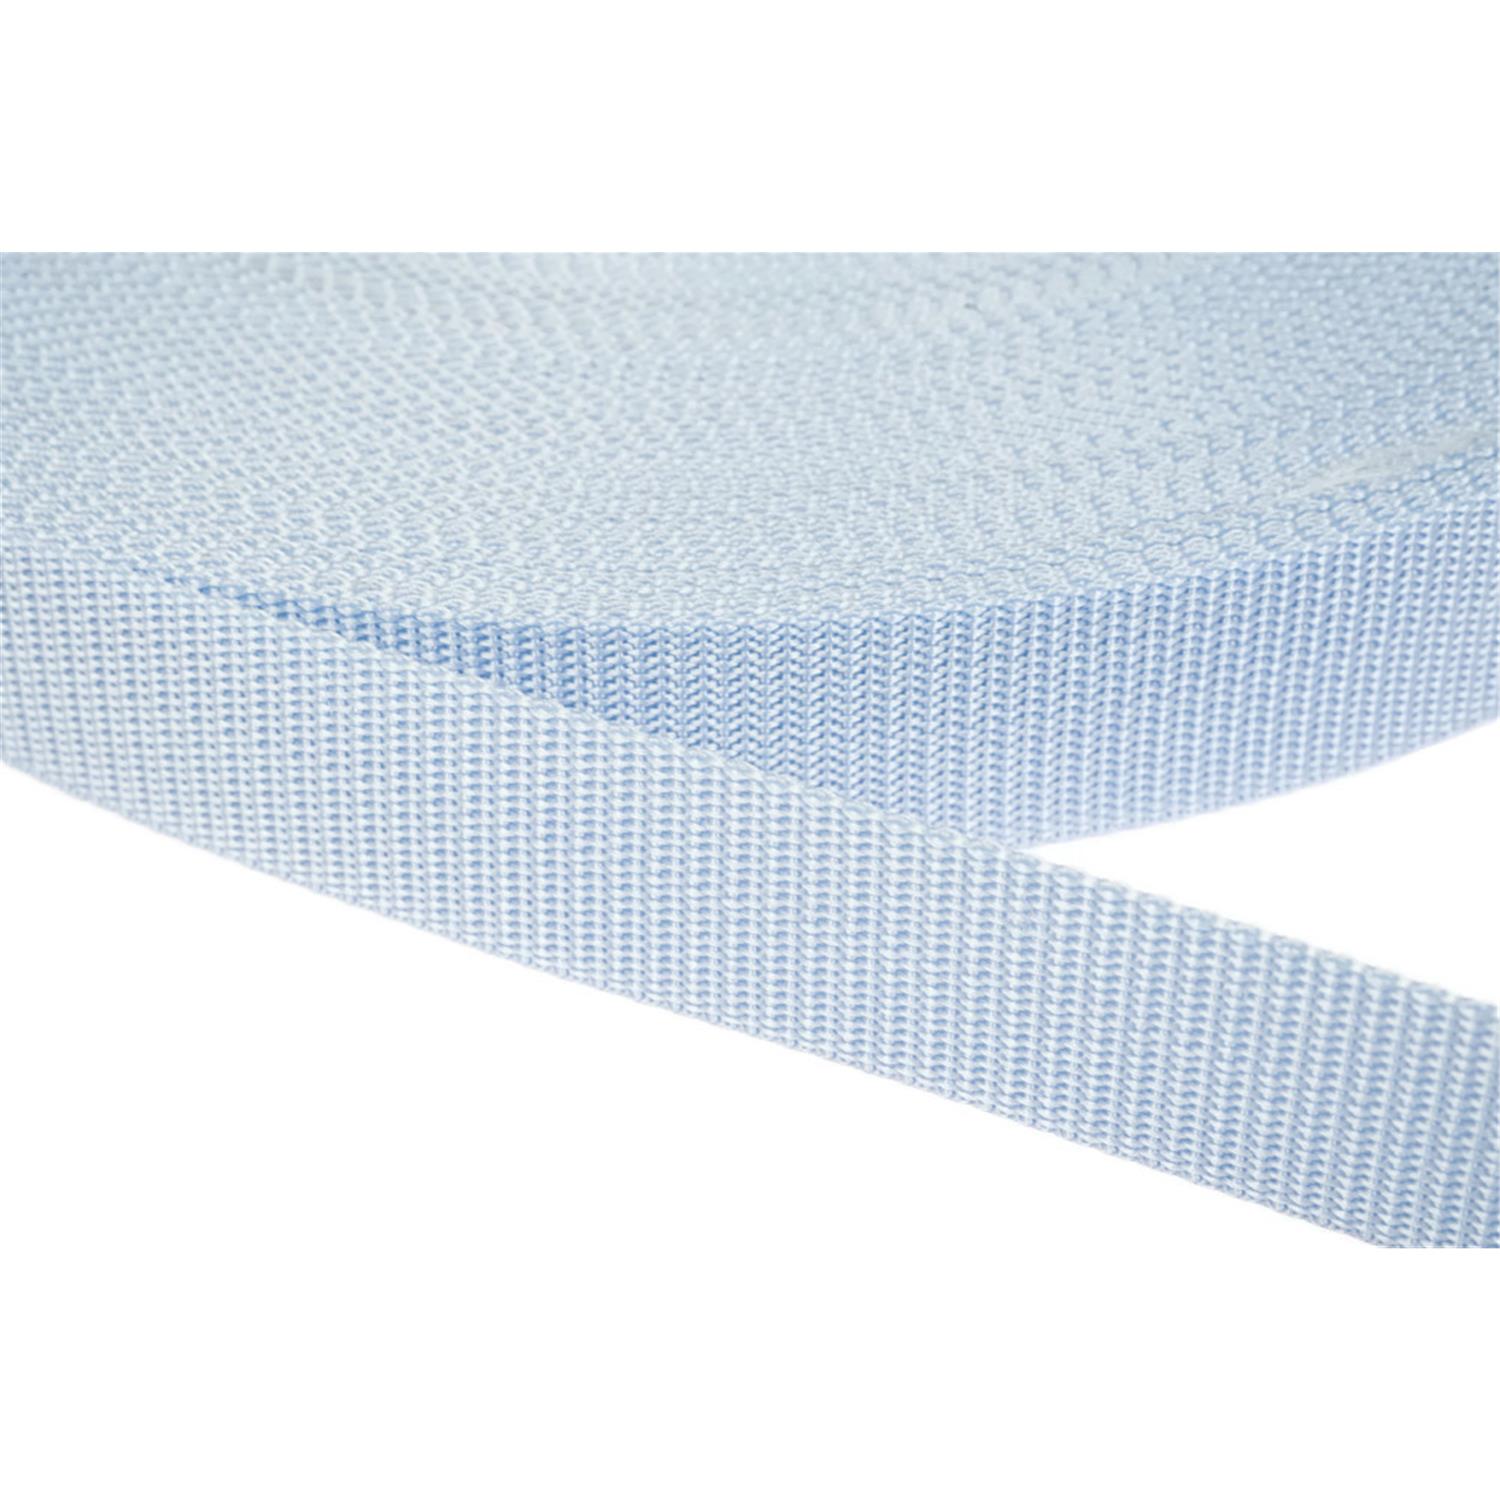 Gurtband 25mm breit aus Polypropylen in 41 Farben 25 - hellblau 12 Meter